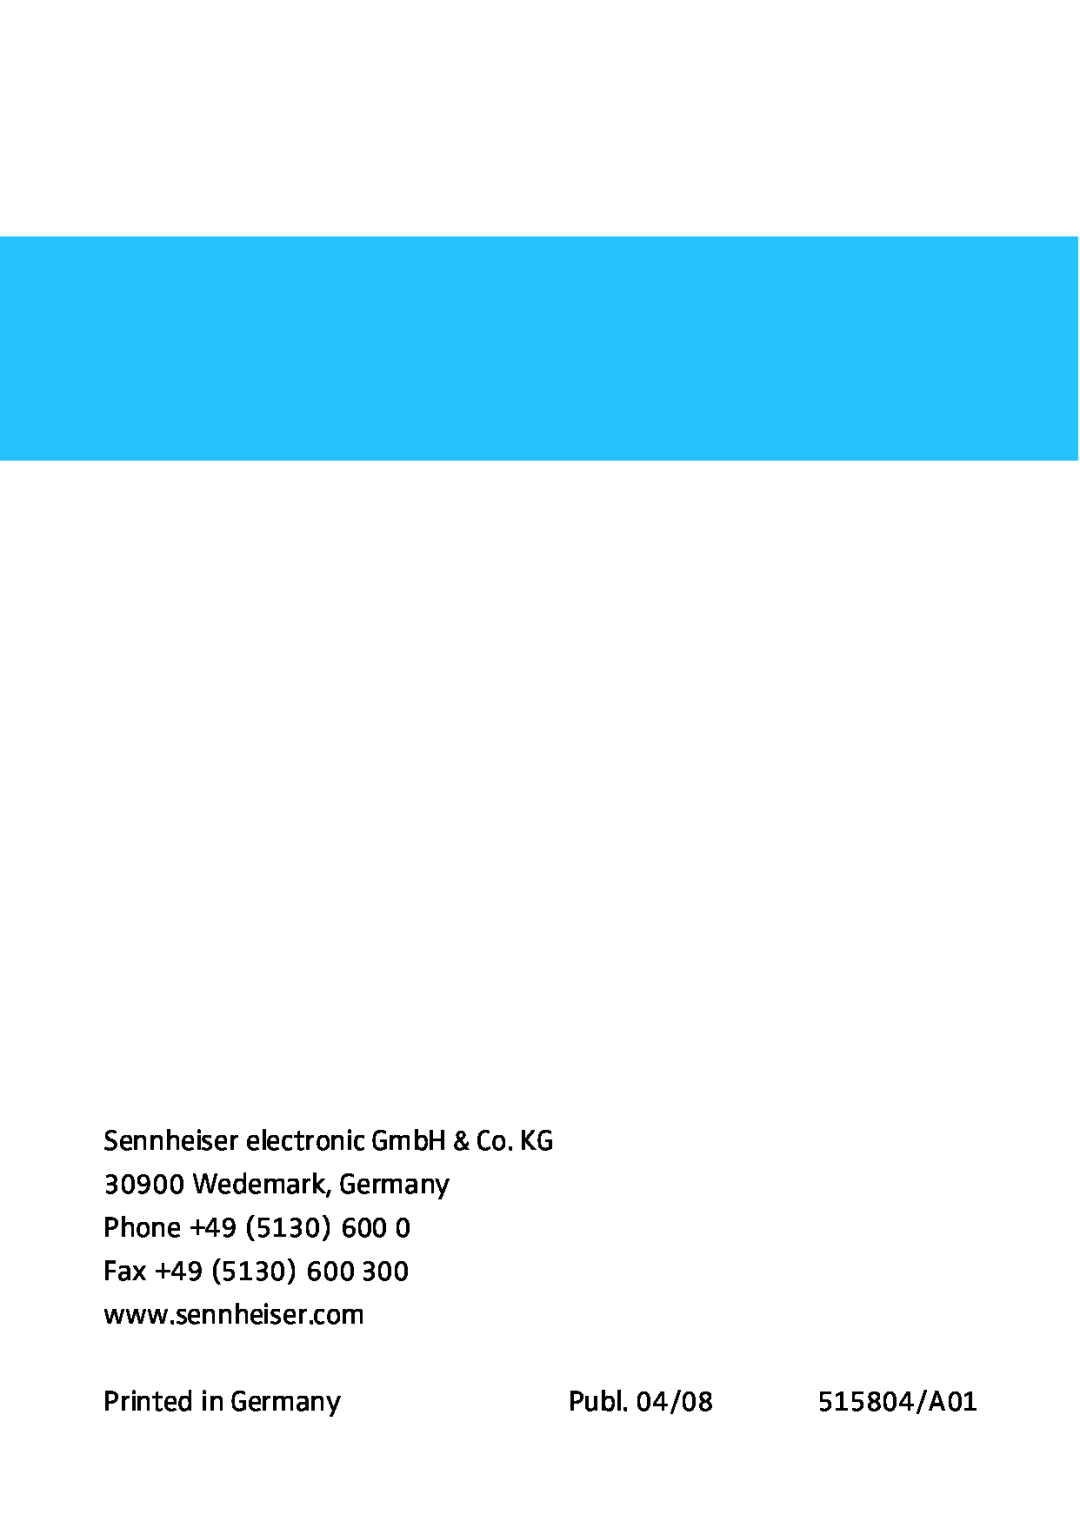 Sennheiser HD HME 46 manual Publ. 04/08, 515804/A01 